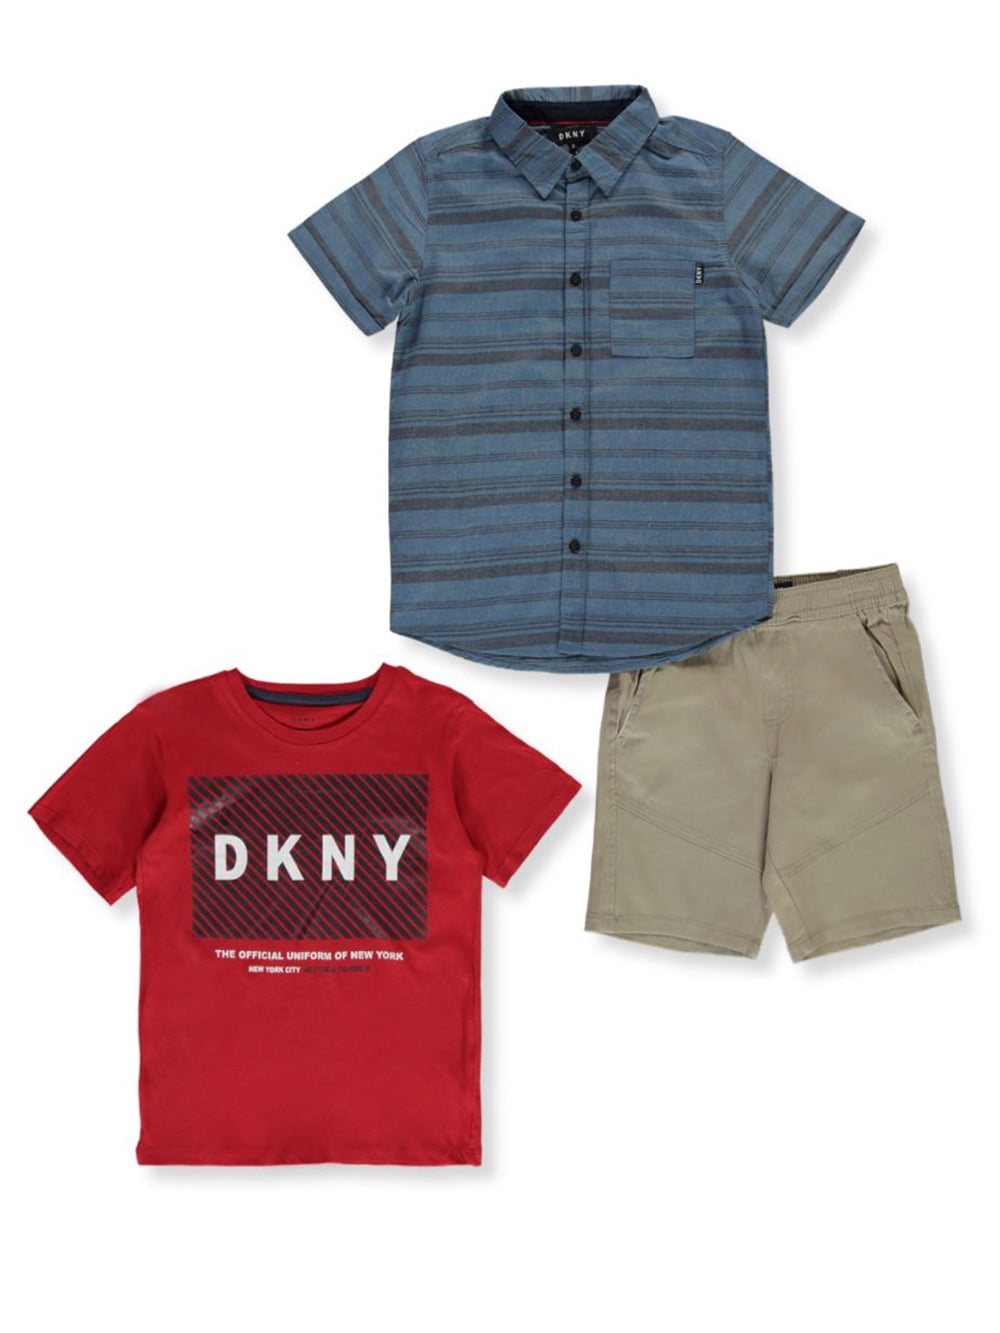 DKNY Boys Shorts Set